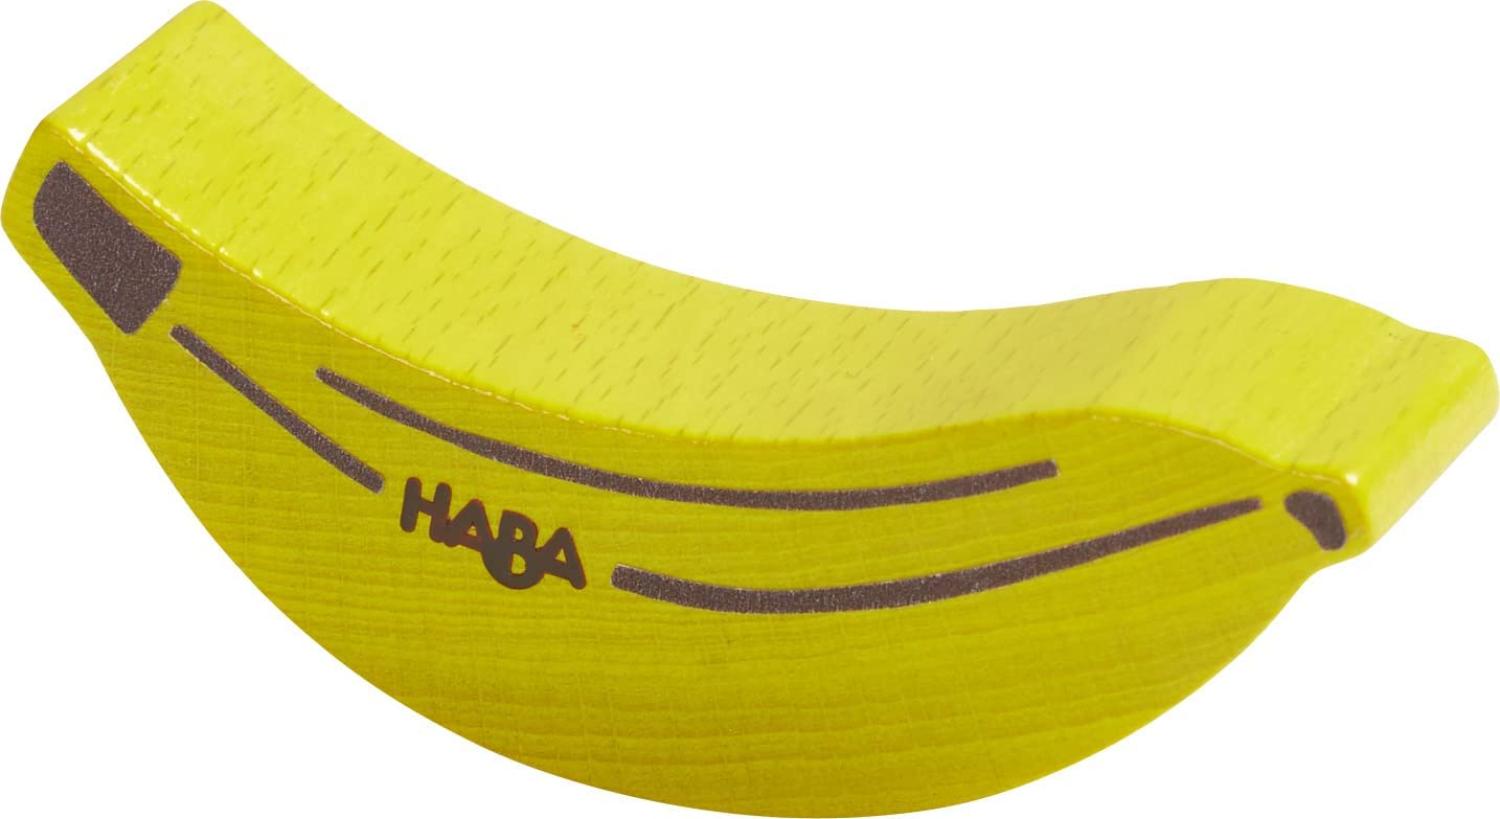 HABA Banane Bild 1